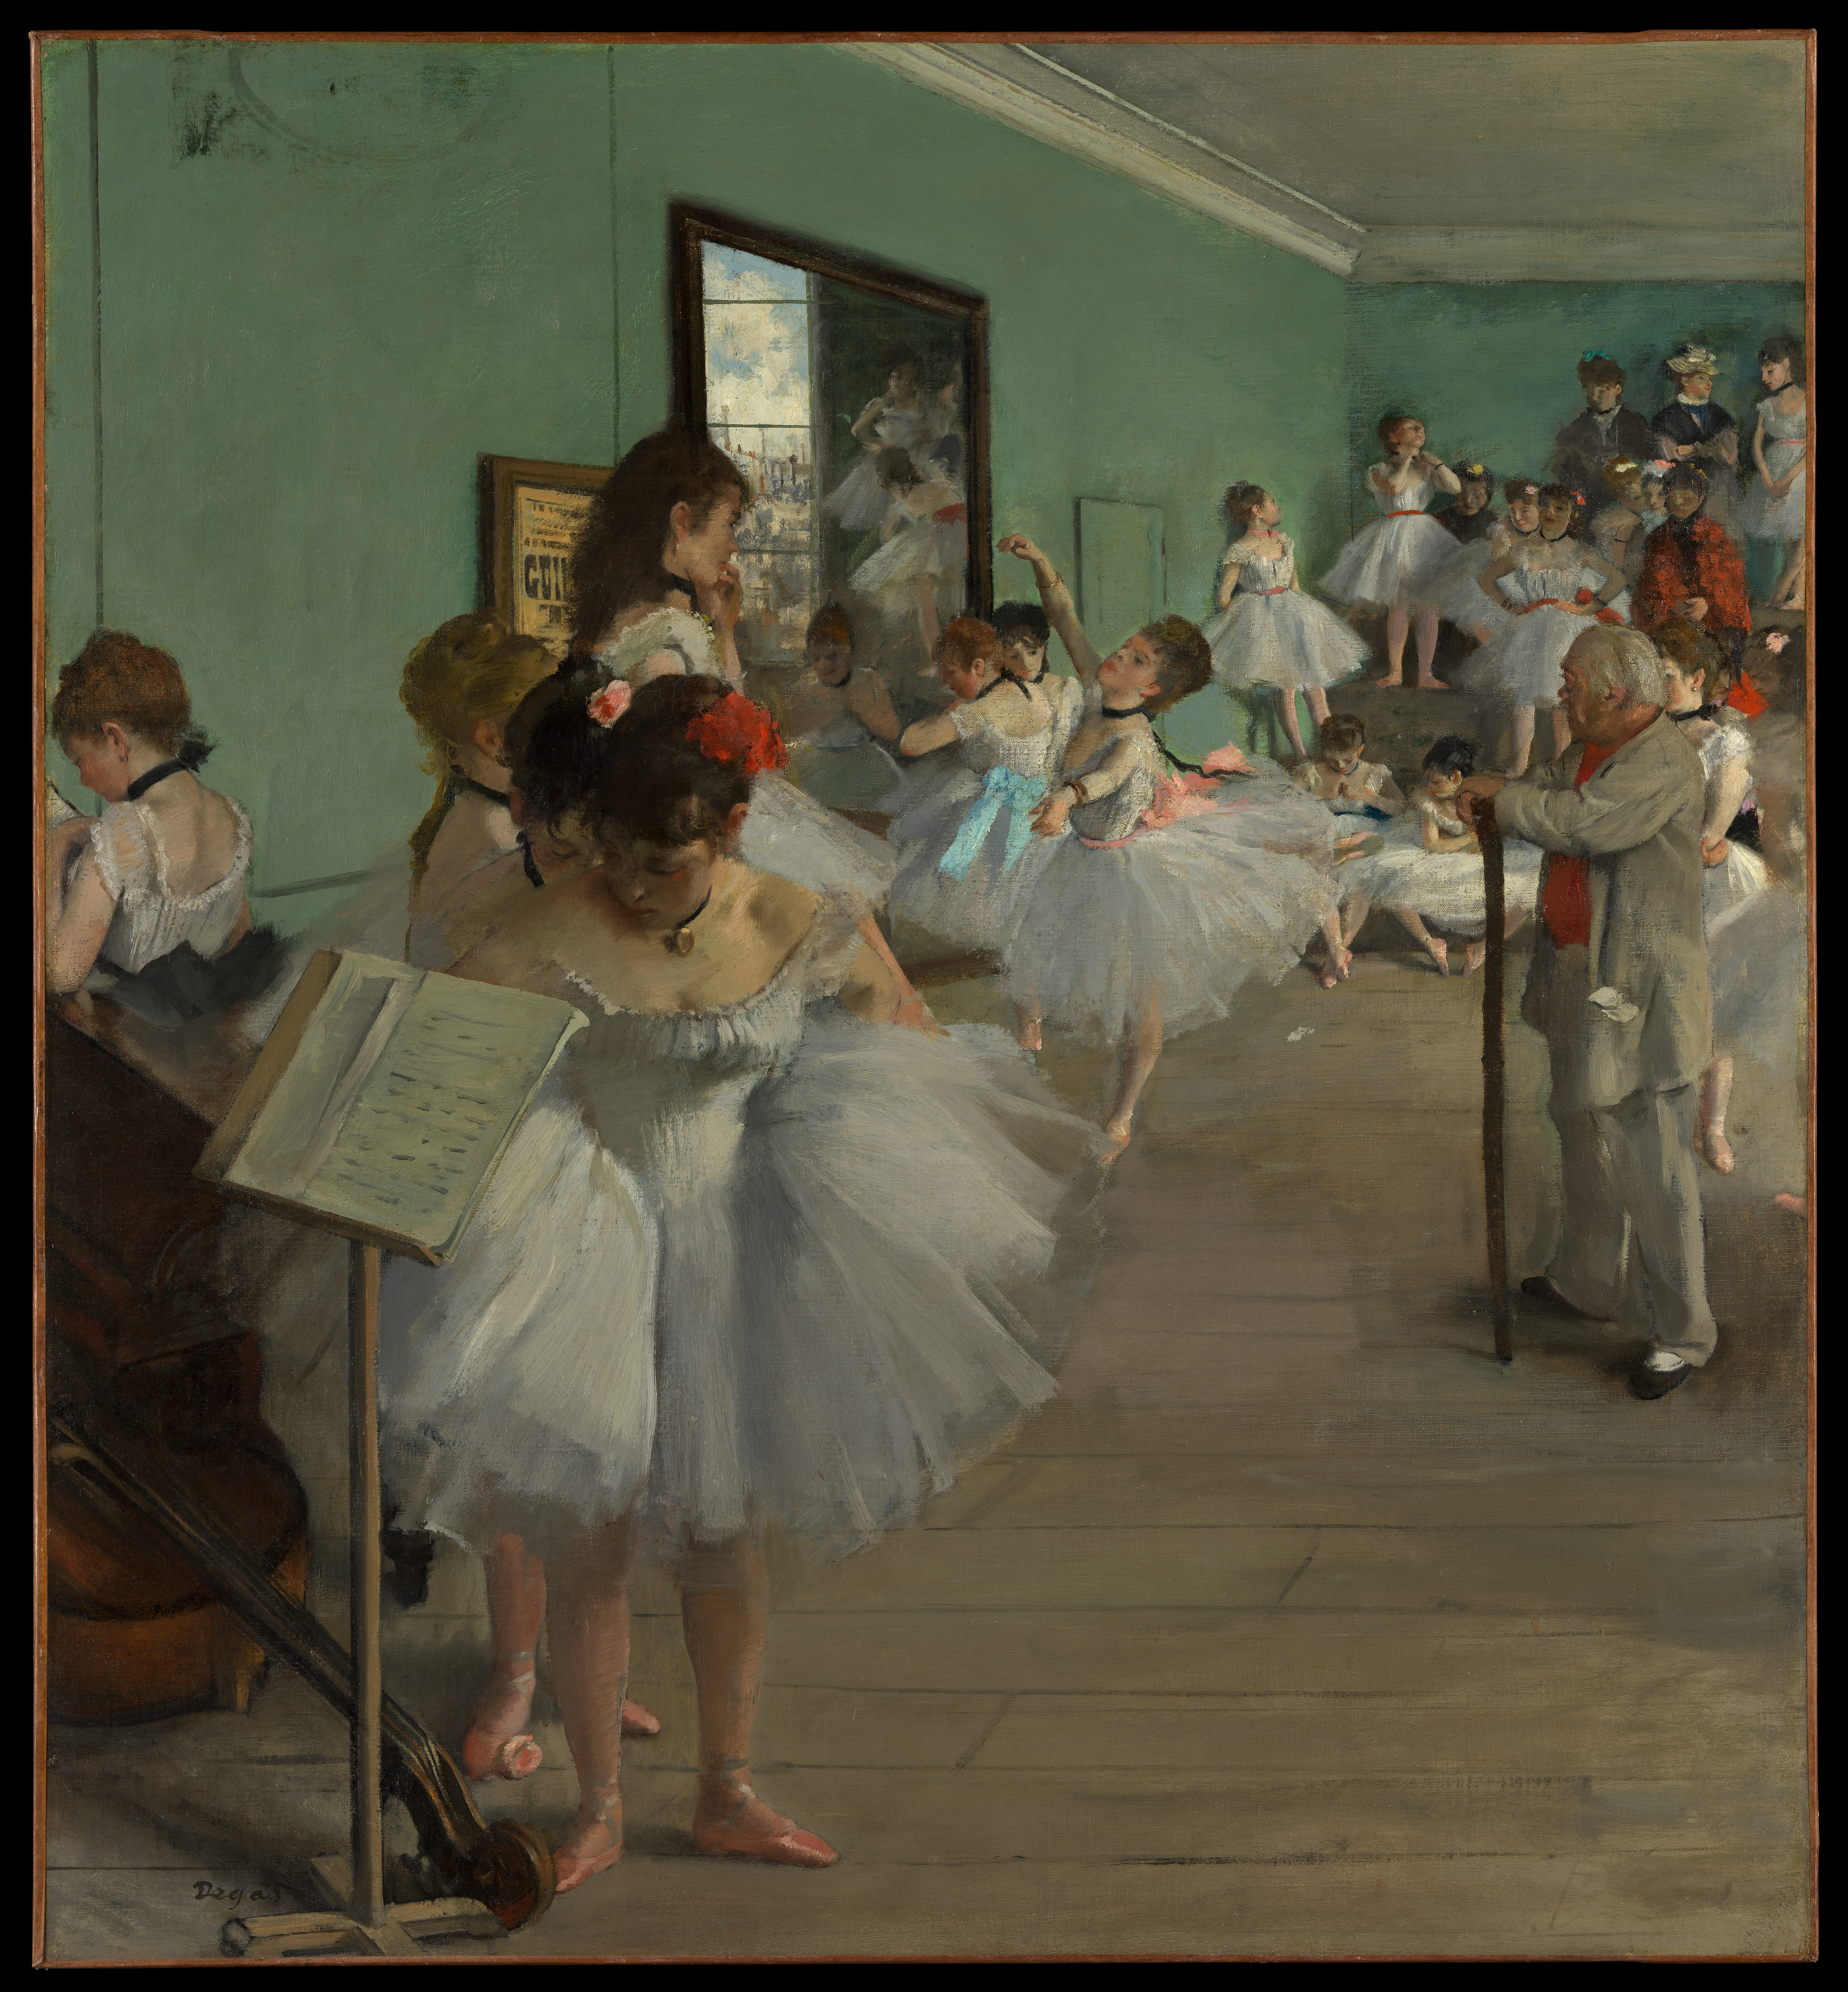 Ballet Dancers in The Metropolitan Museum